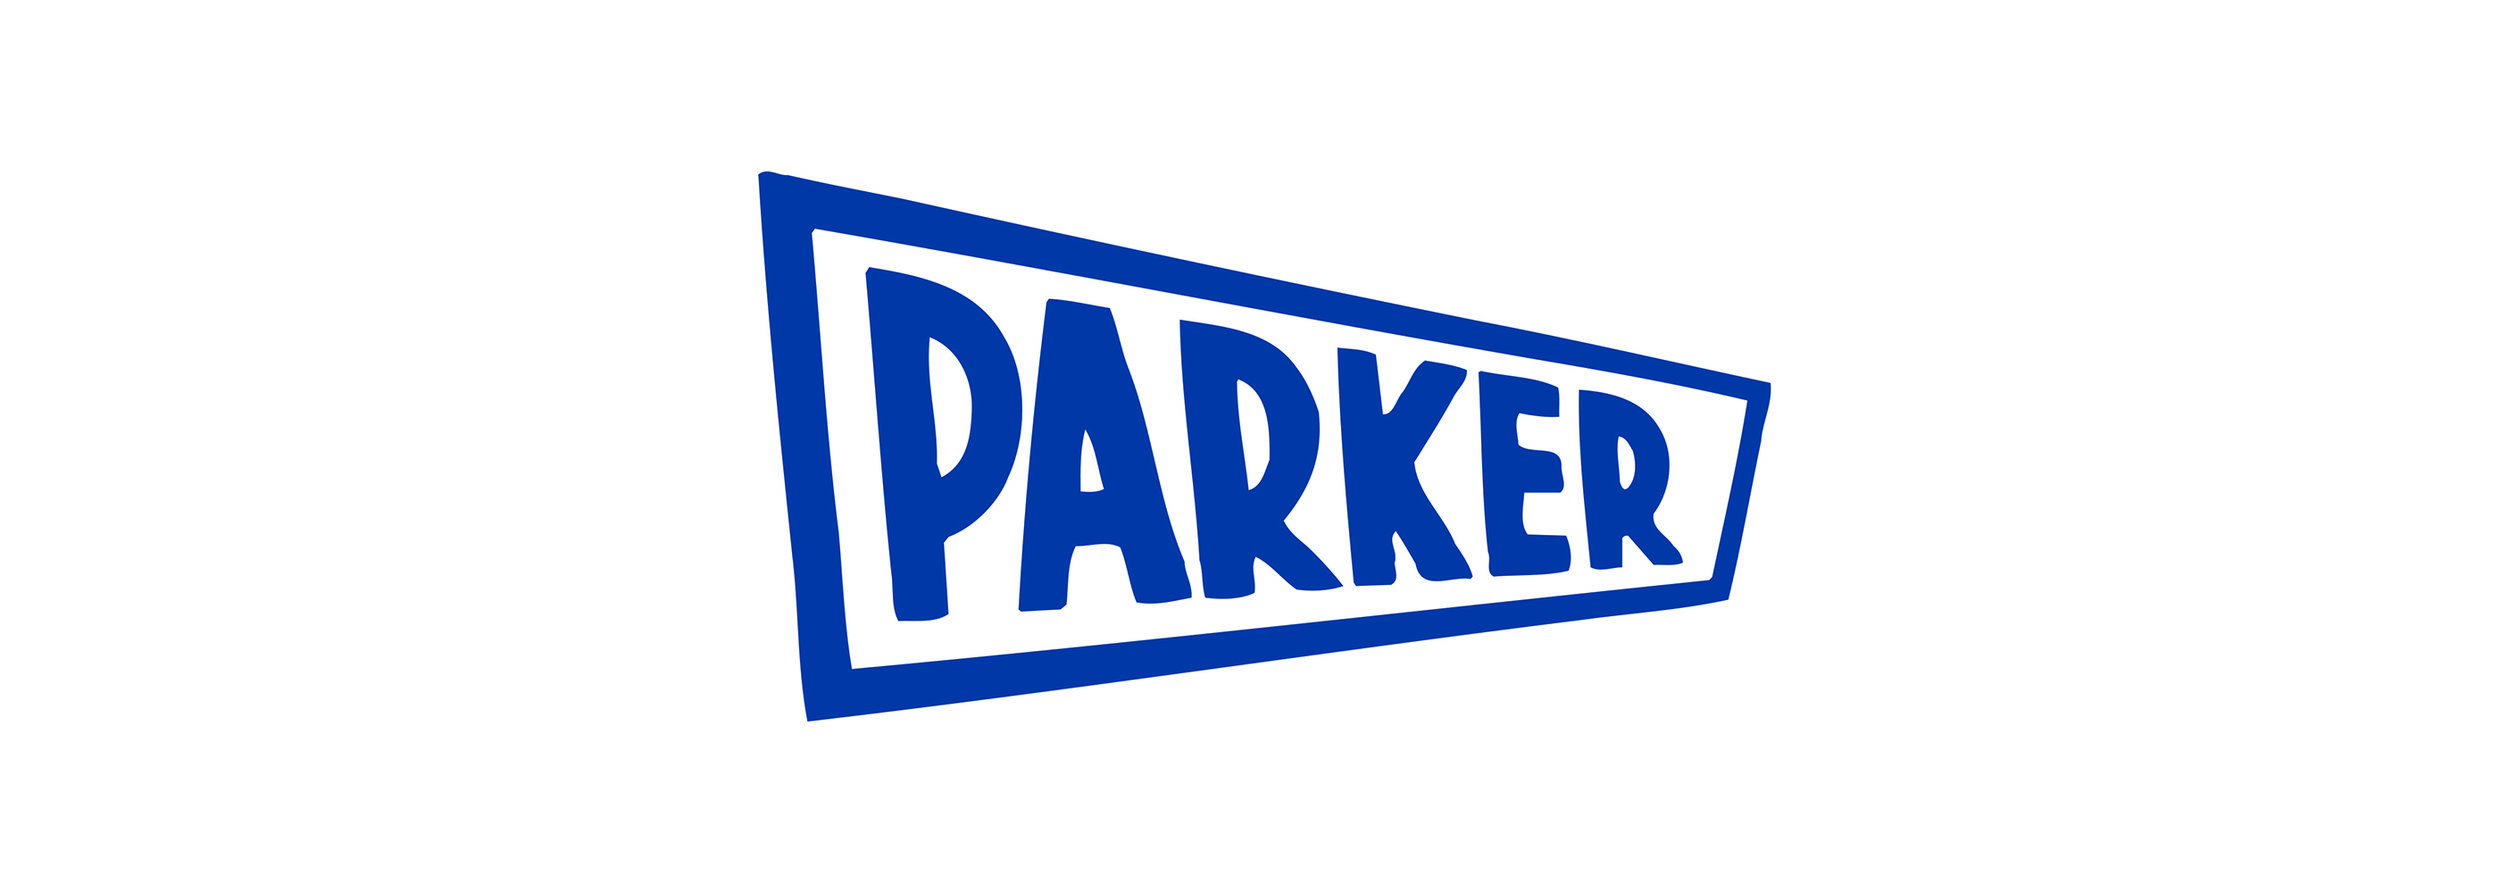 Parker.jpg